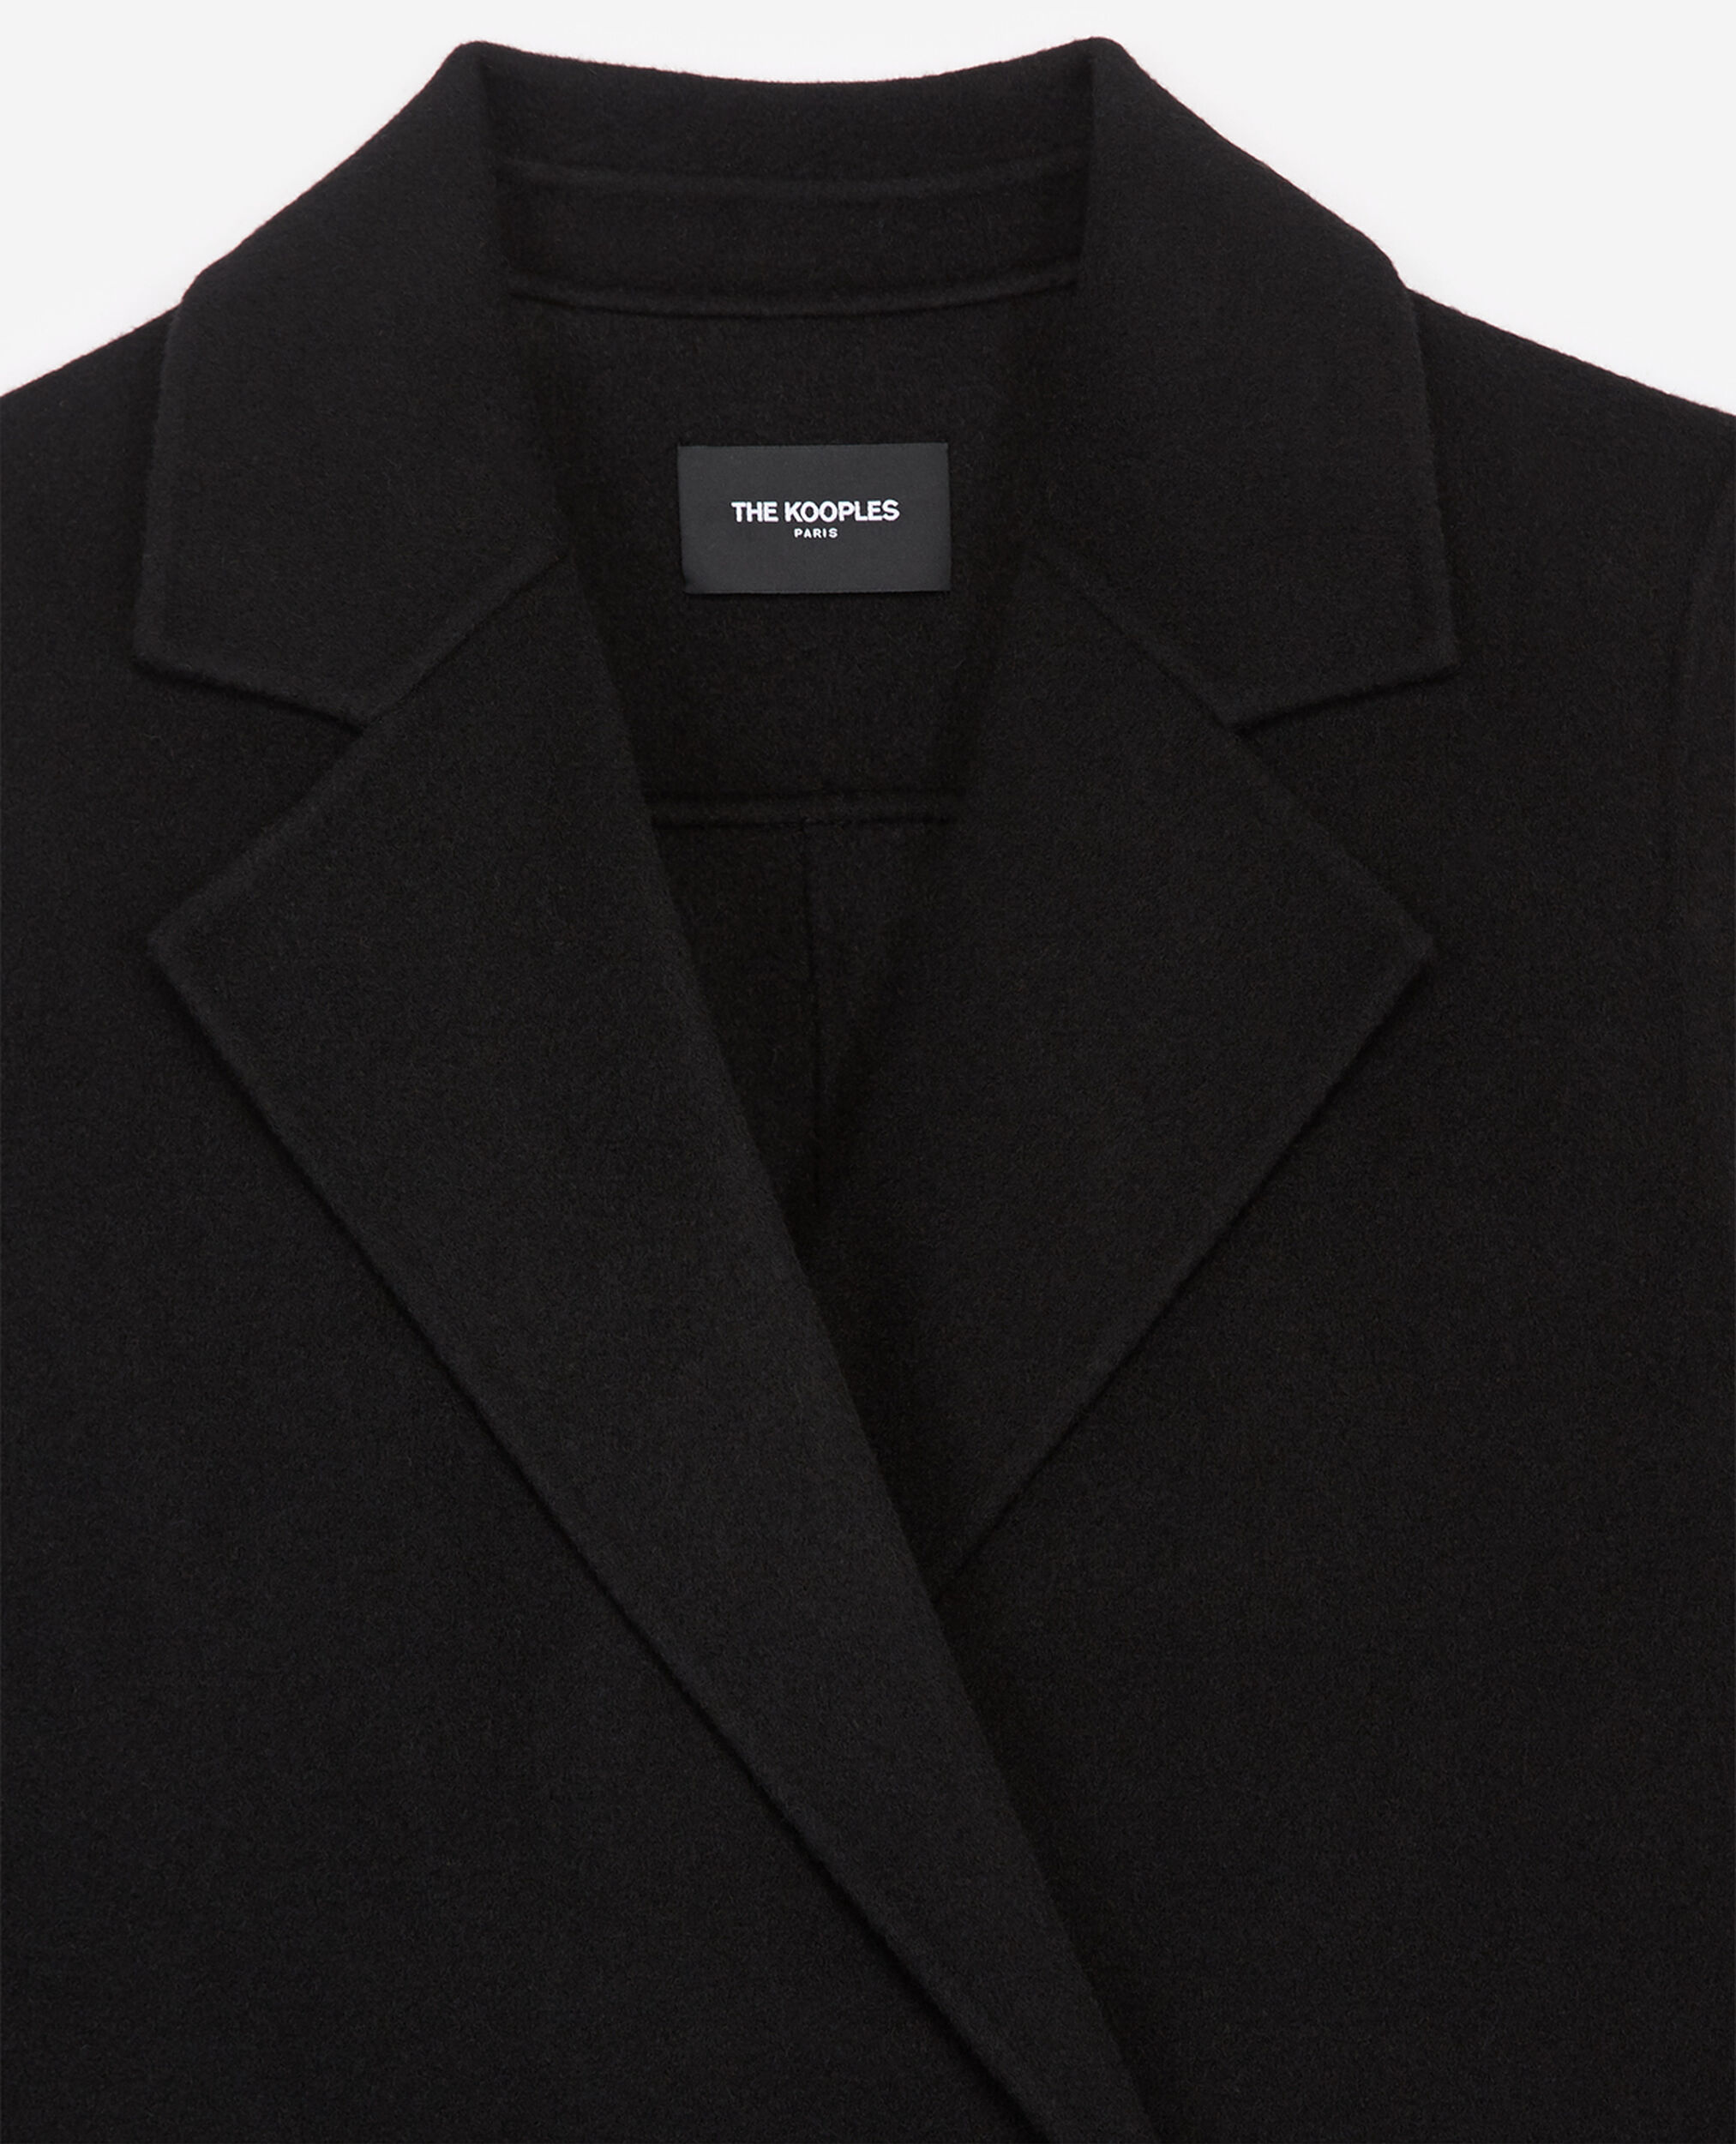 Manteau laine noir court à franges, BLACK, hi-res image number null